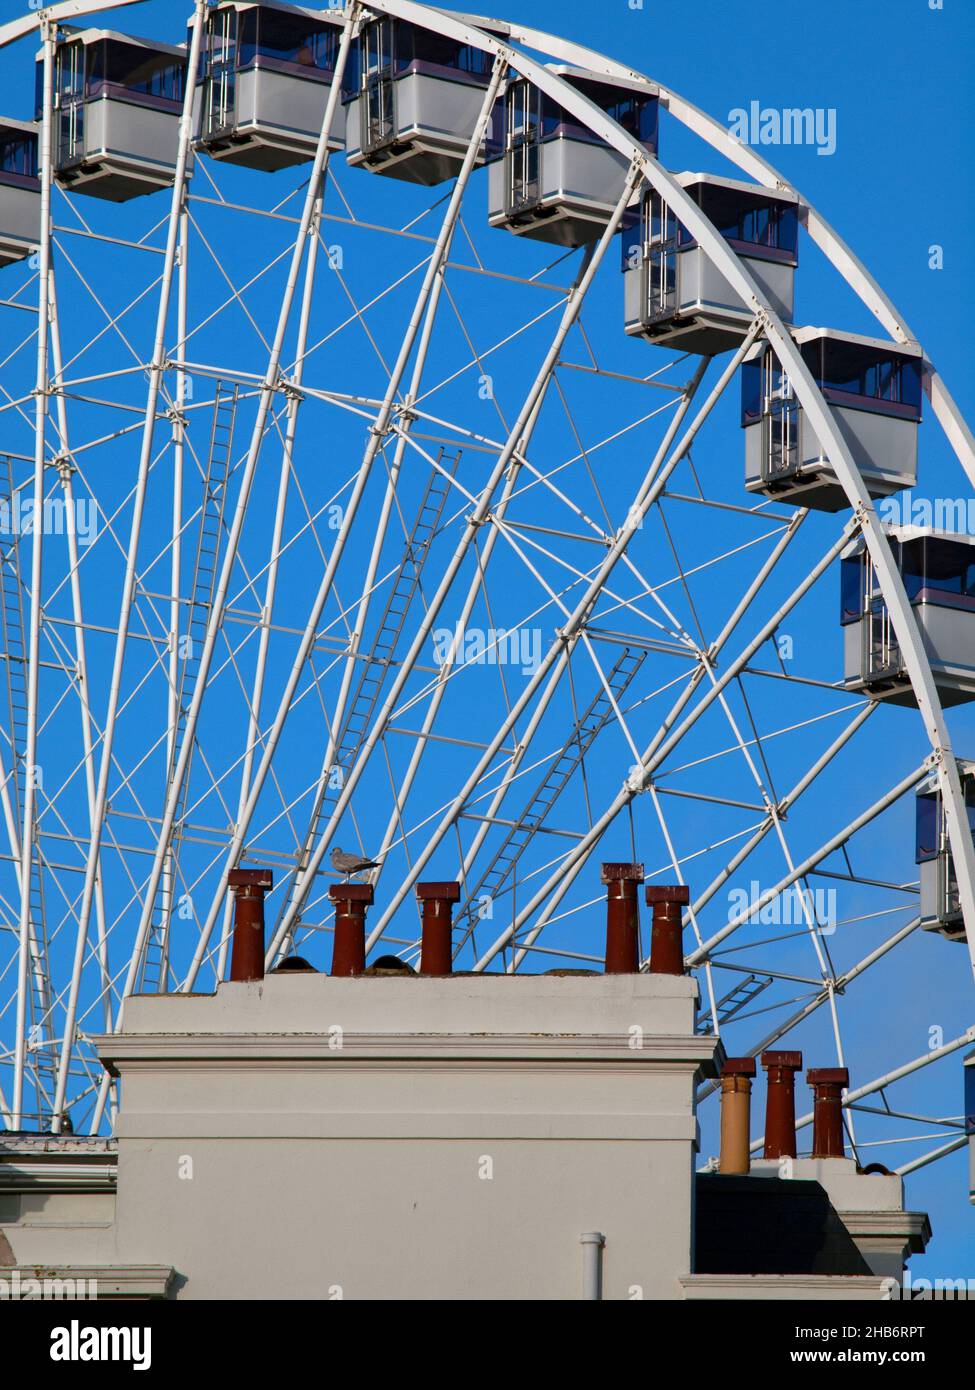 A Ferris wheel in Brighton, England Stock Photo